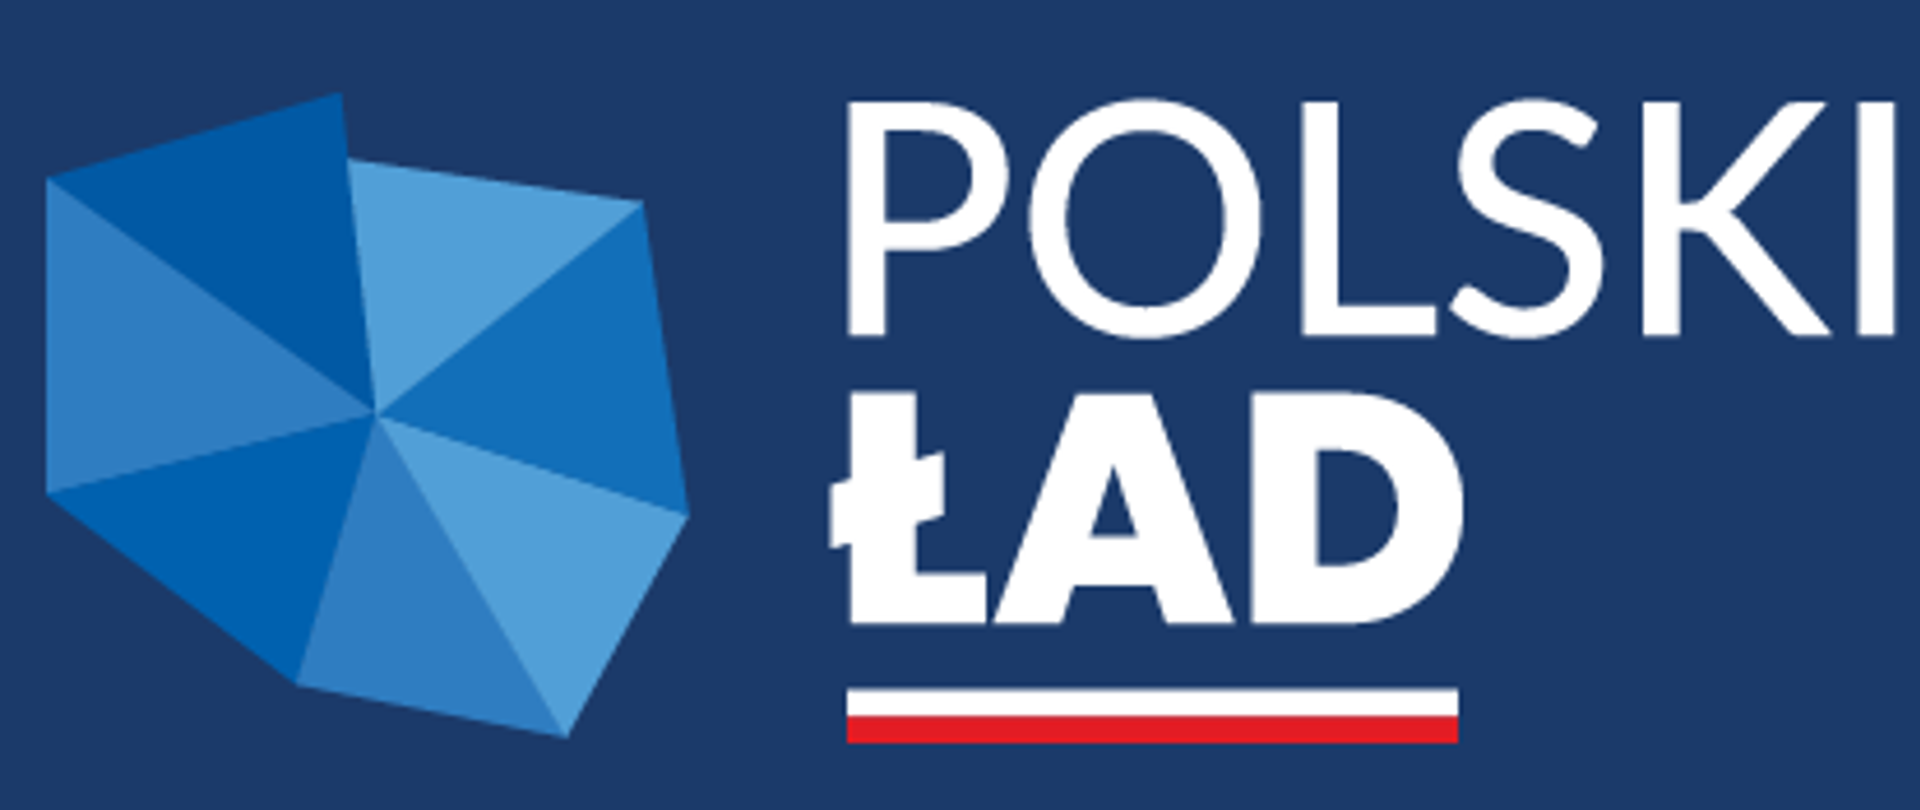 Polski Ład - logo